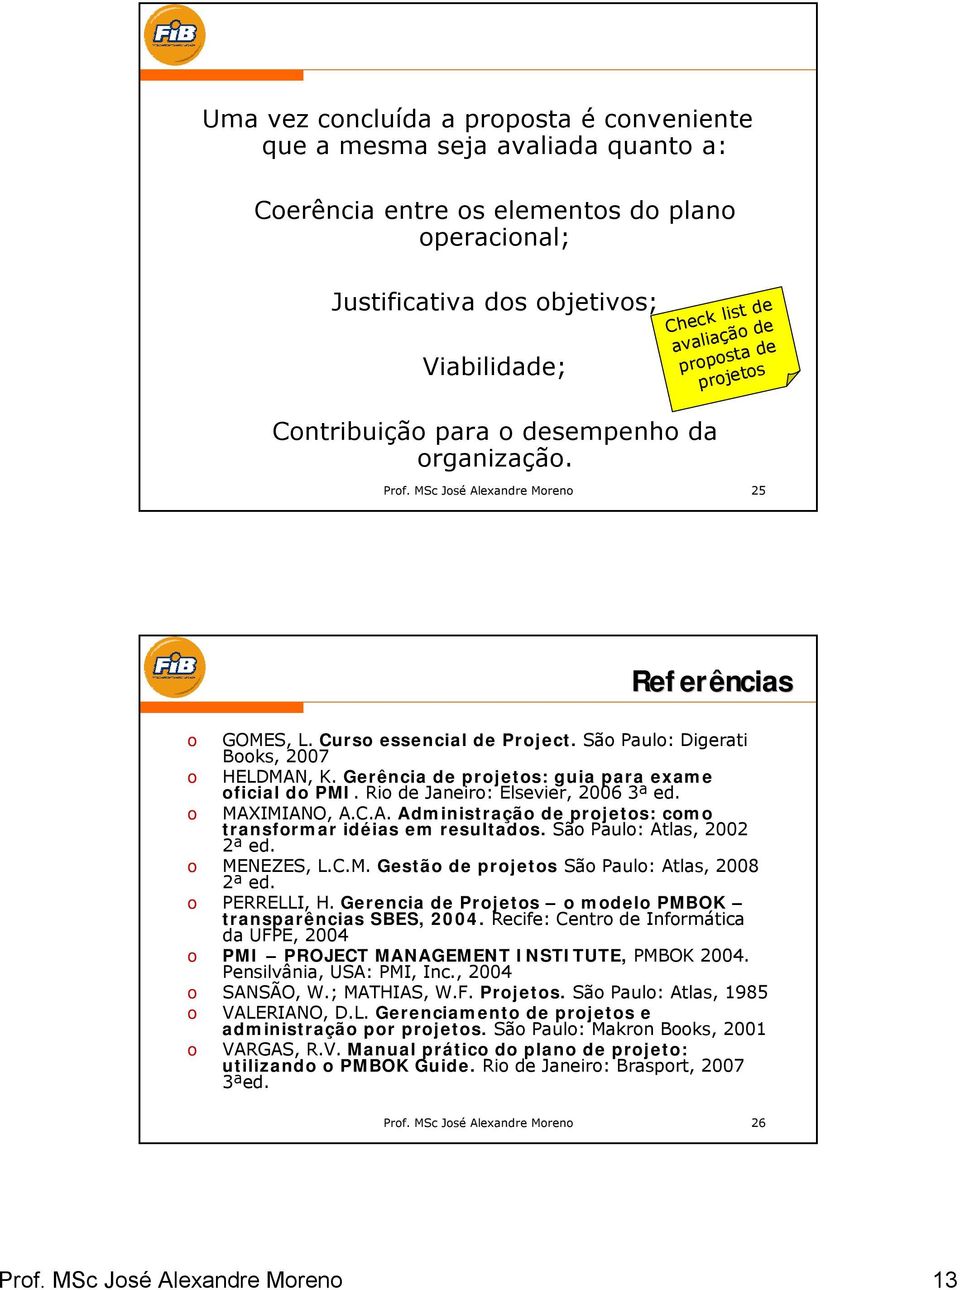 Gerência de projetos: guia para exame oficial do PMI. Rio de Janeiro: Elsevier, 2006 3ª ed. o MAXIMIANO, A.C.A. Administração de projetos: como transformar idéias em resultados.